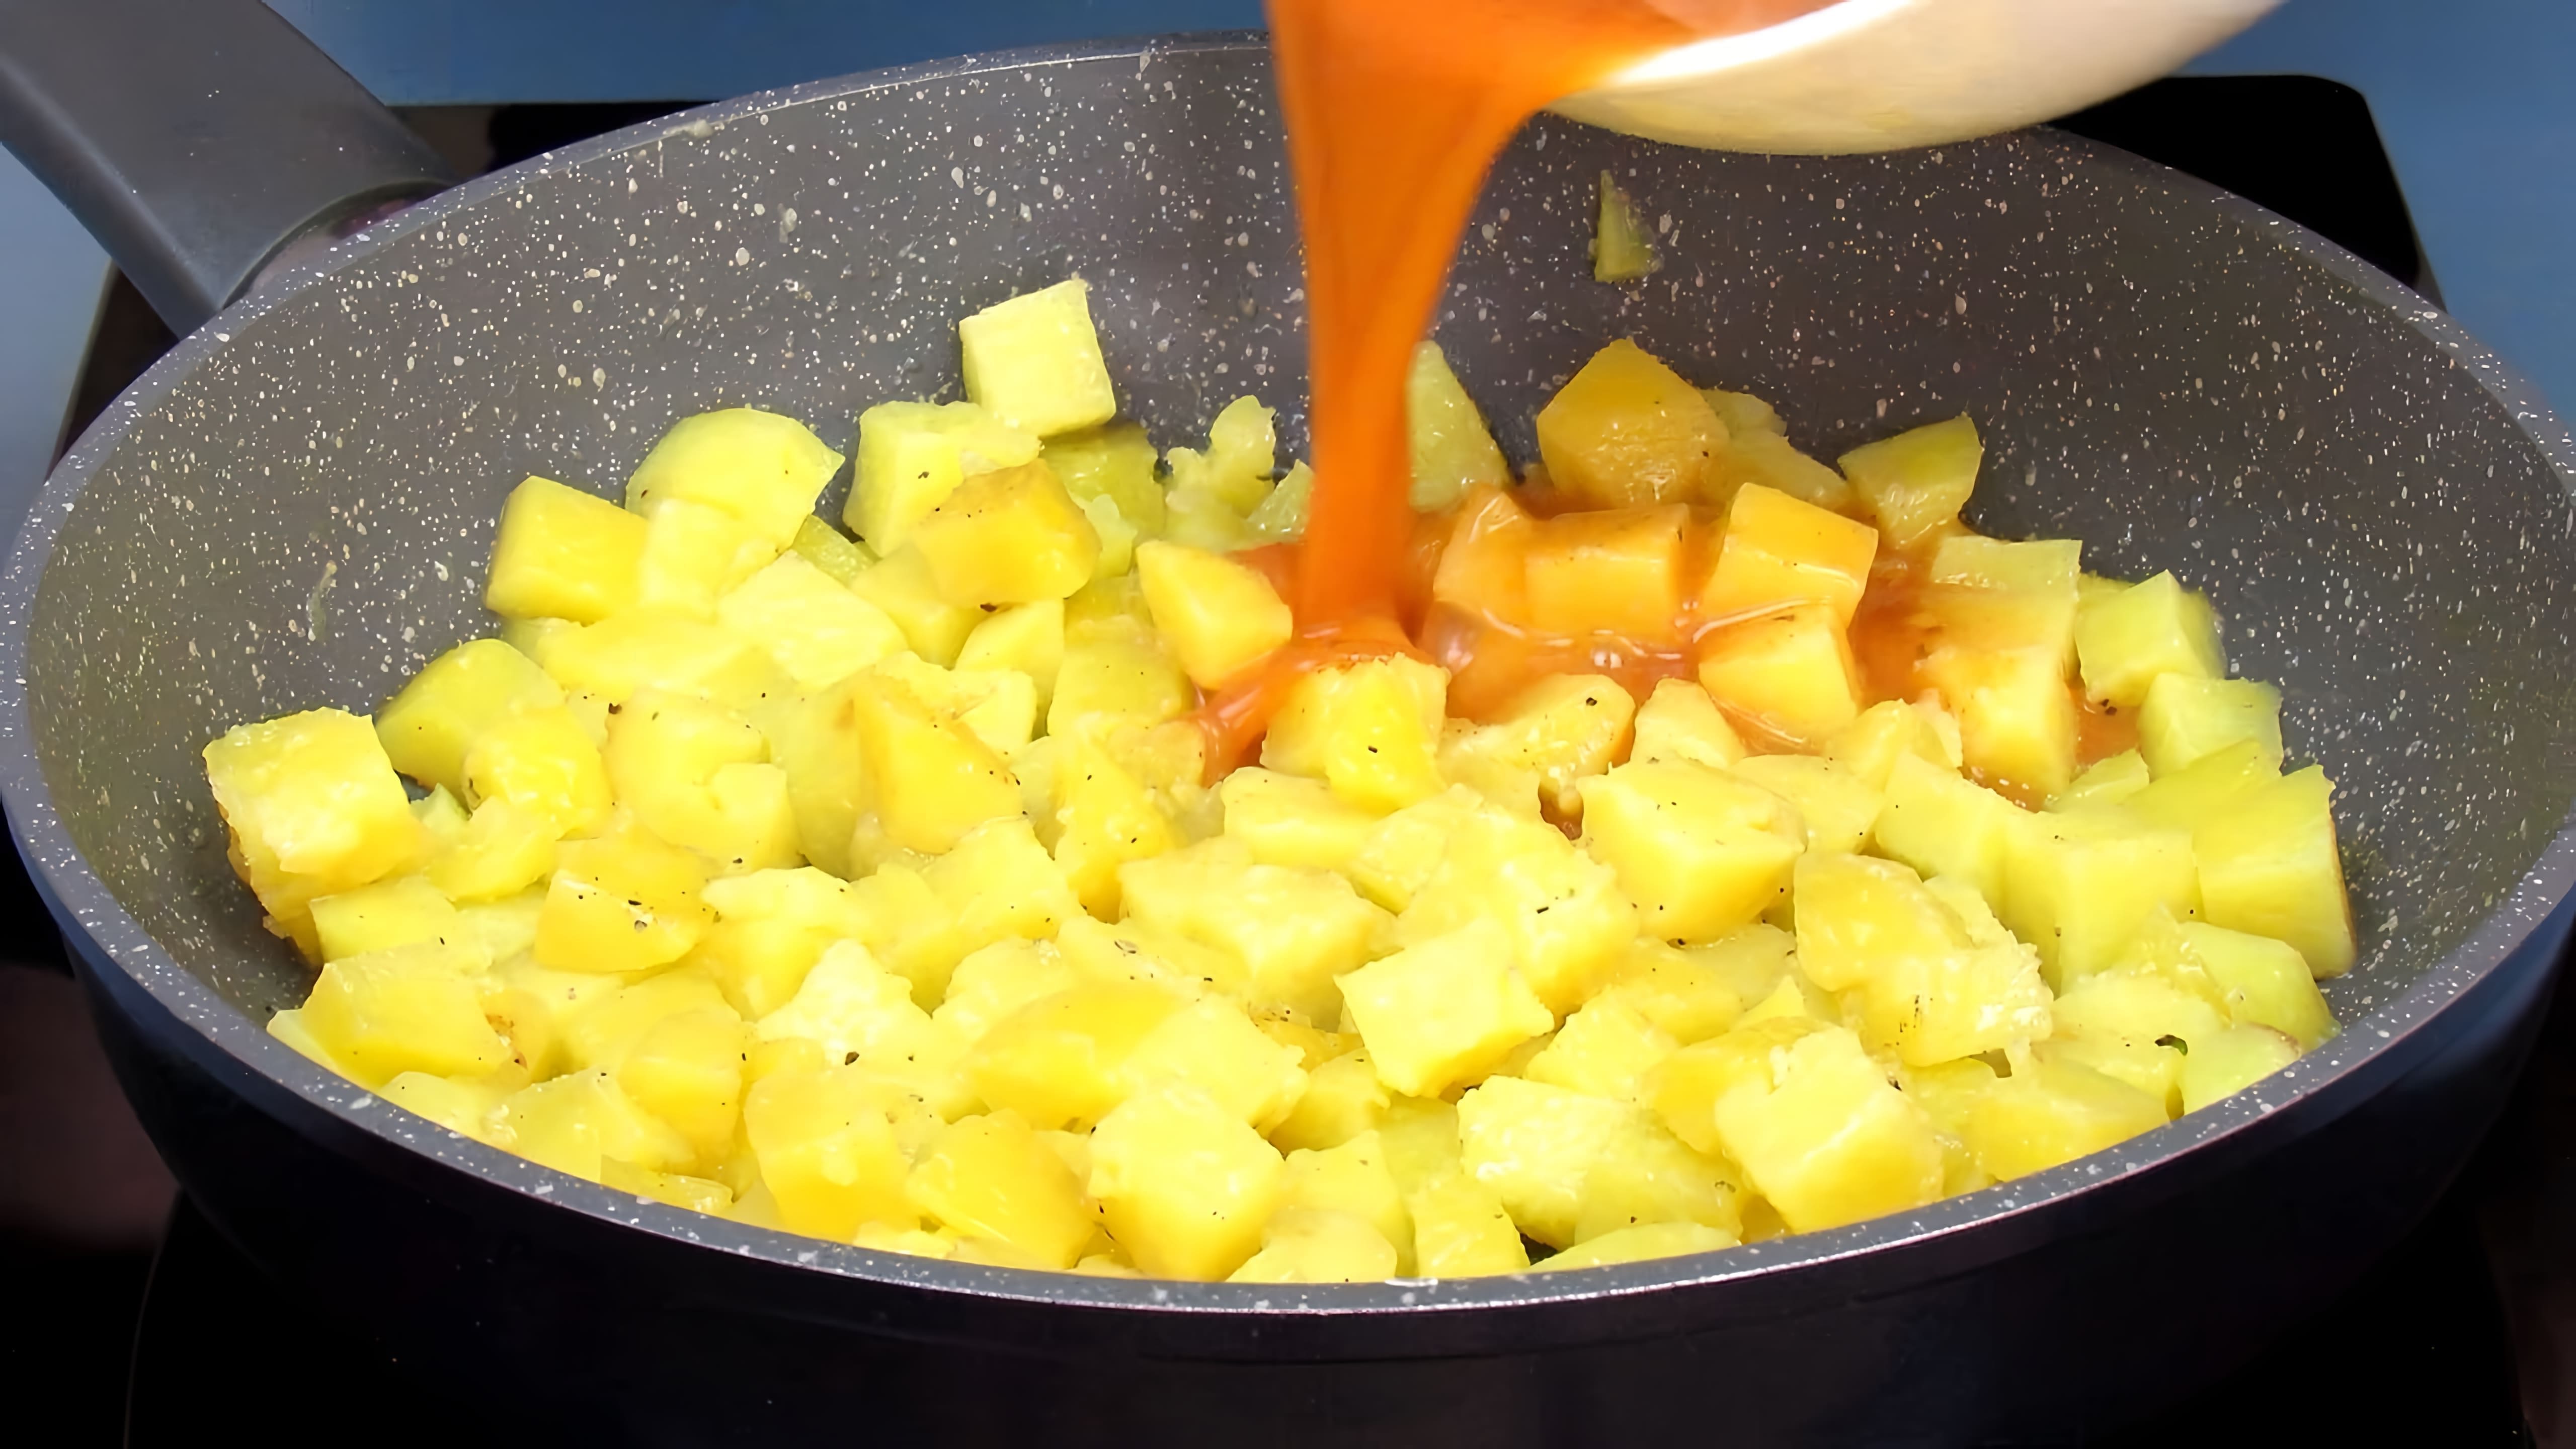 Это даже лучше, чем жареная картошка! Готовим вкусный и быстрый ужин на сковороде из самых простых продуктов. 